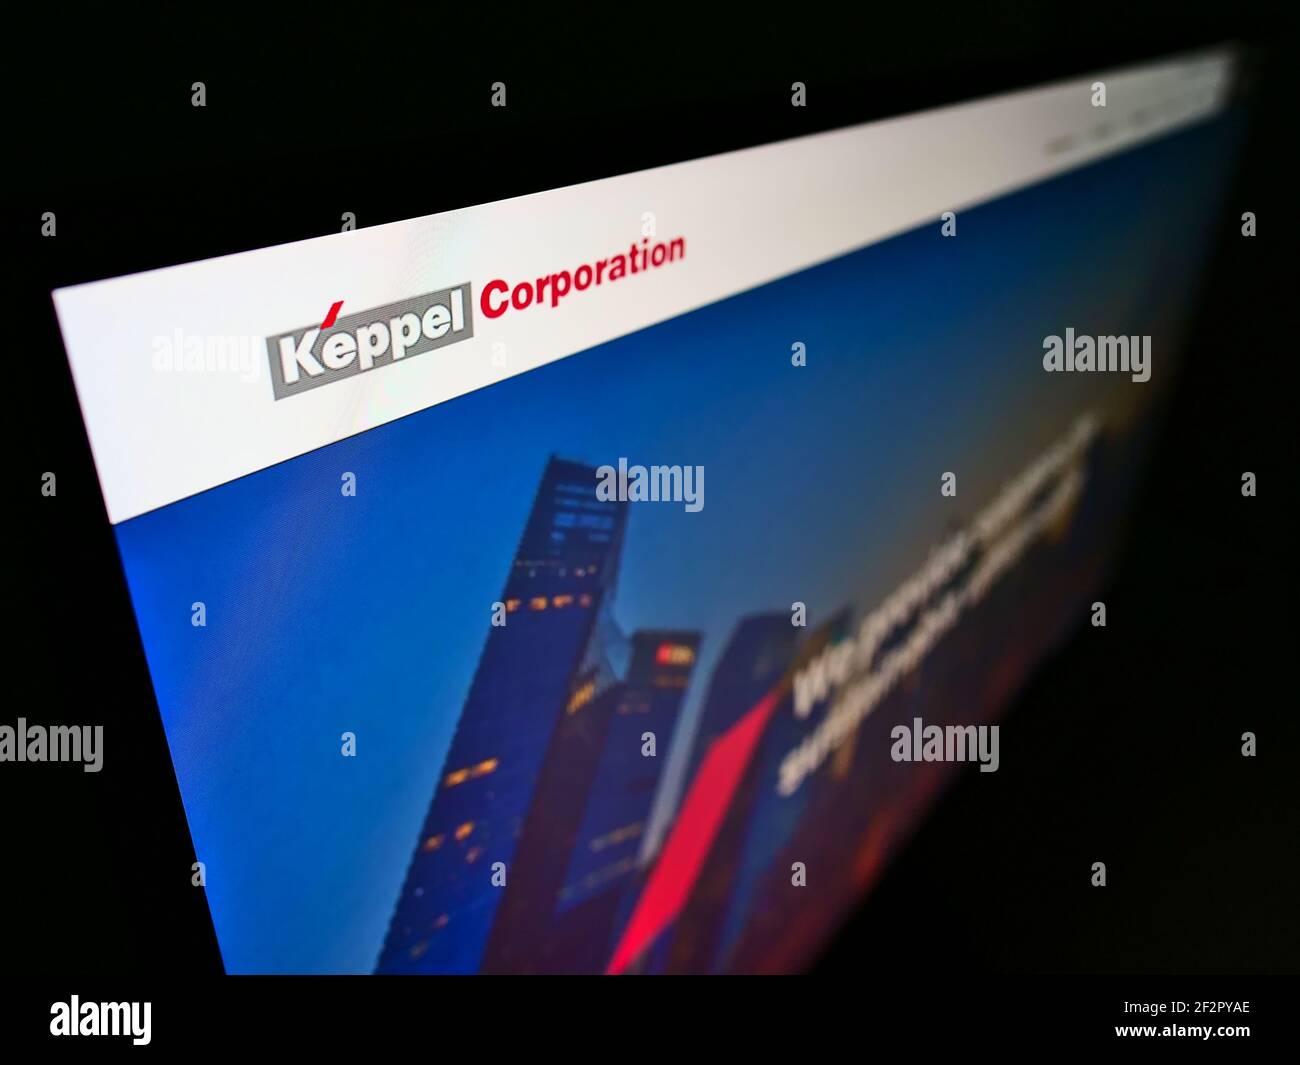 Vista ad alto angolo del sito web aziendale con il logo aziendale del conglomerato singaporiano Keppel Corporation su monitor. Mettere a fuoco in alto a sinistra dello schermo. Foto Stock